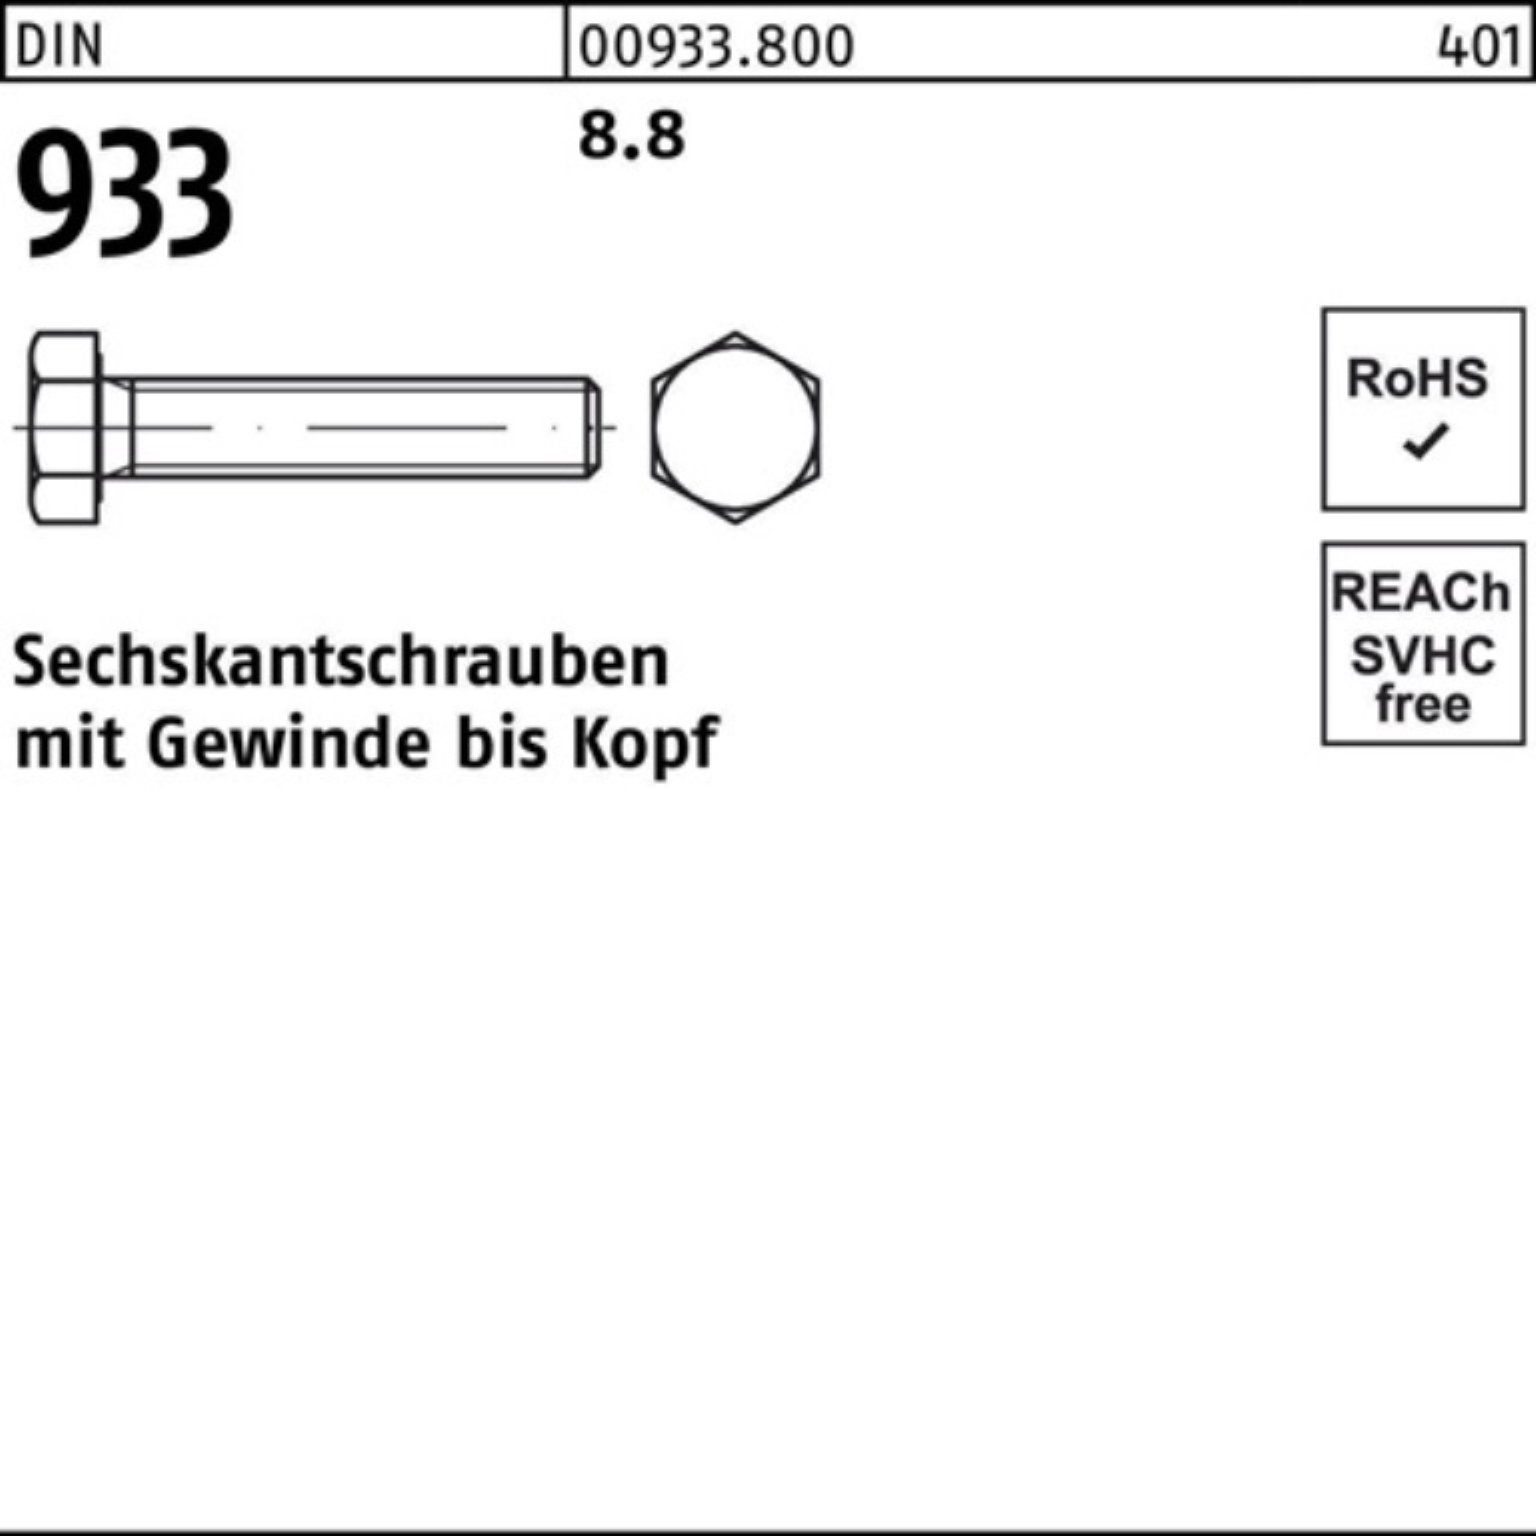 Reyher Sechskantschraube 100er 50 VG 933 240 DIN Pack DIN 933 8.8 M10x Stück Sechskantschraube